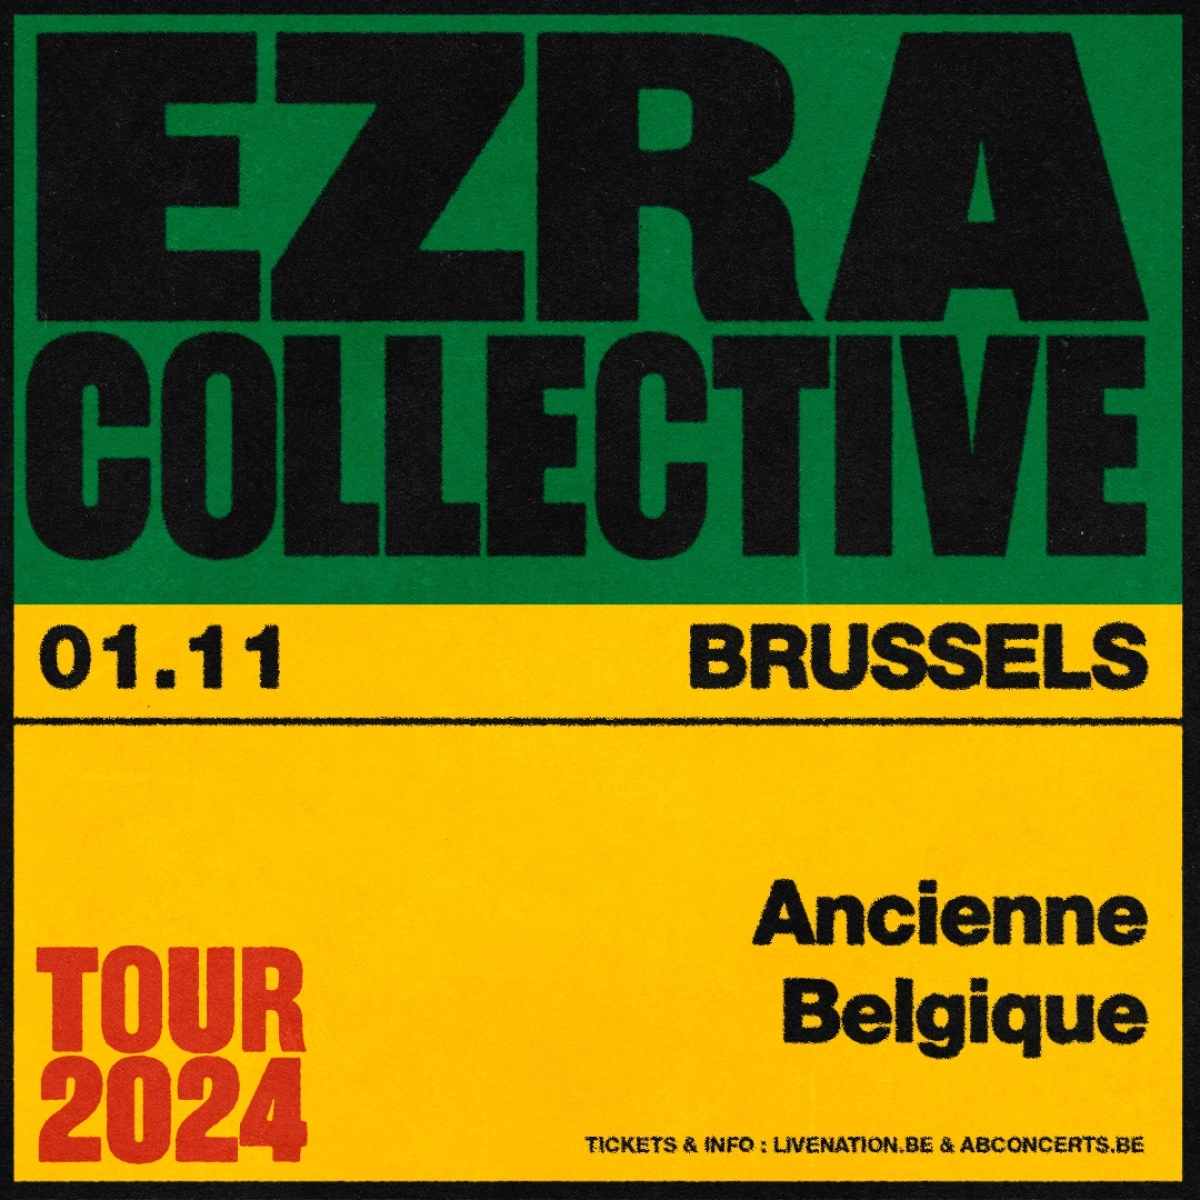 Billets Ezra Collective (Ancienne Belgique - Bruxelles)